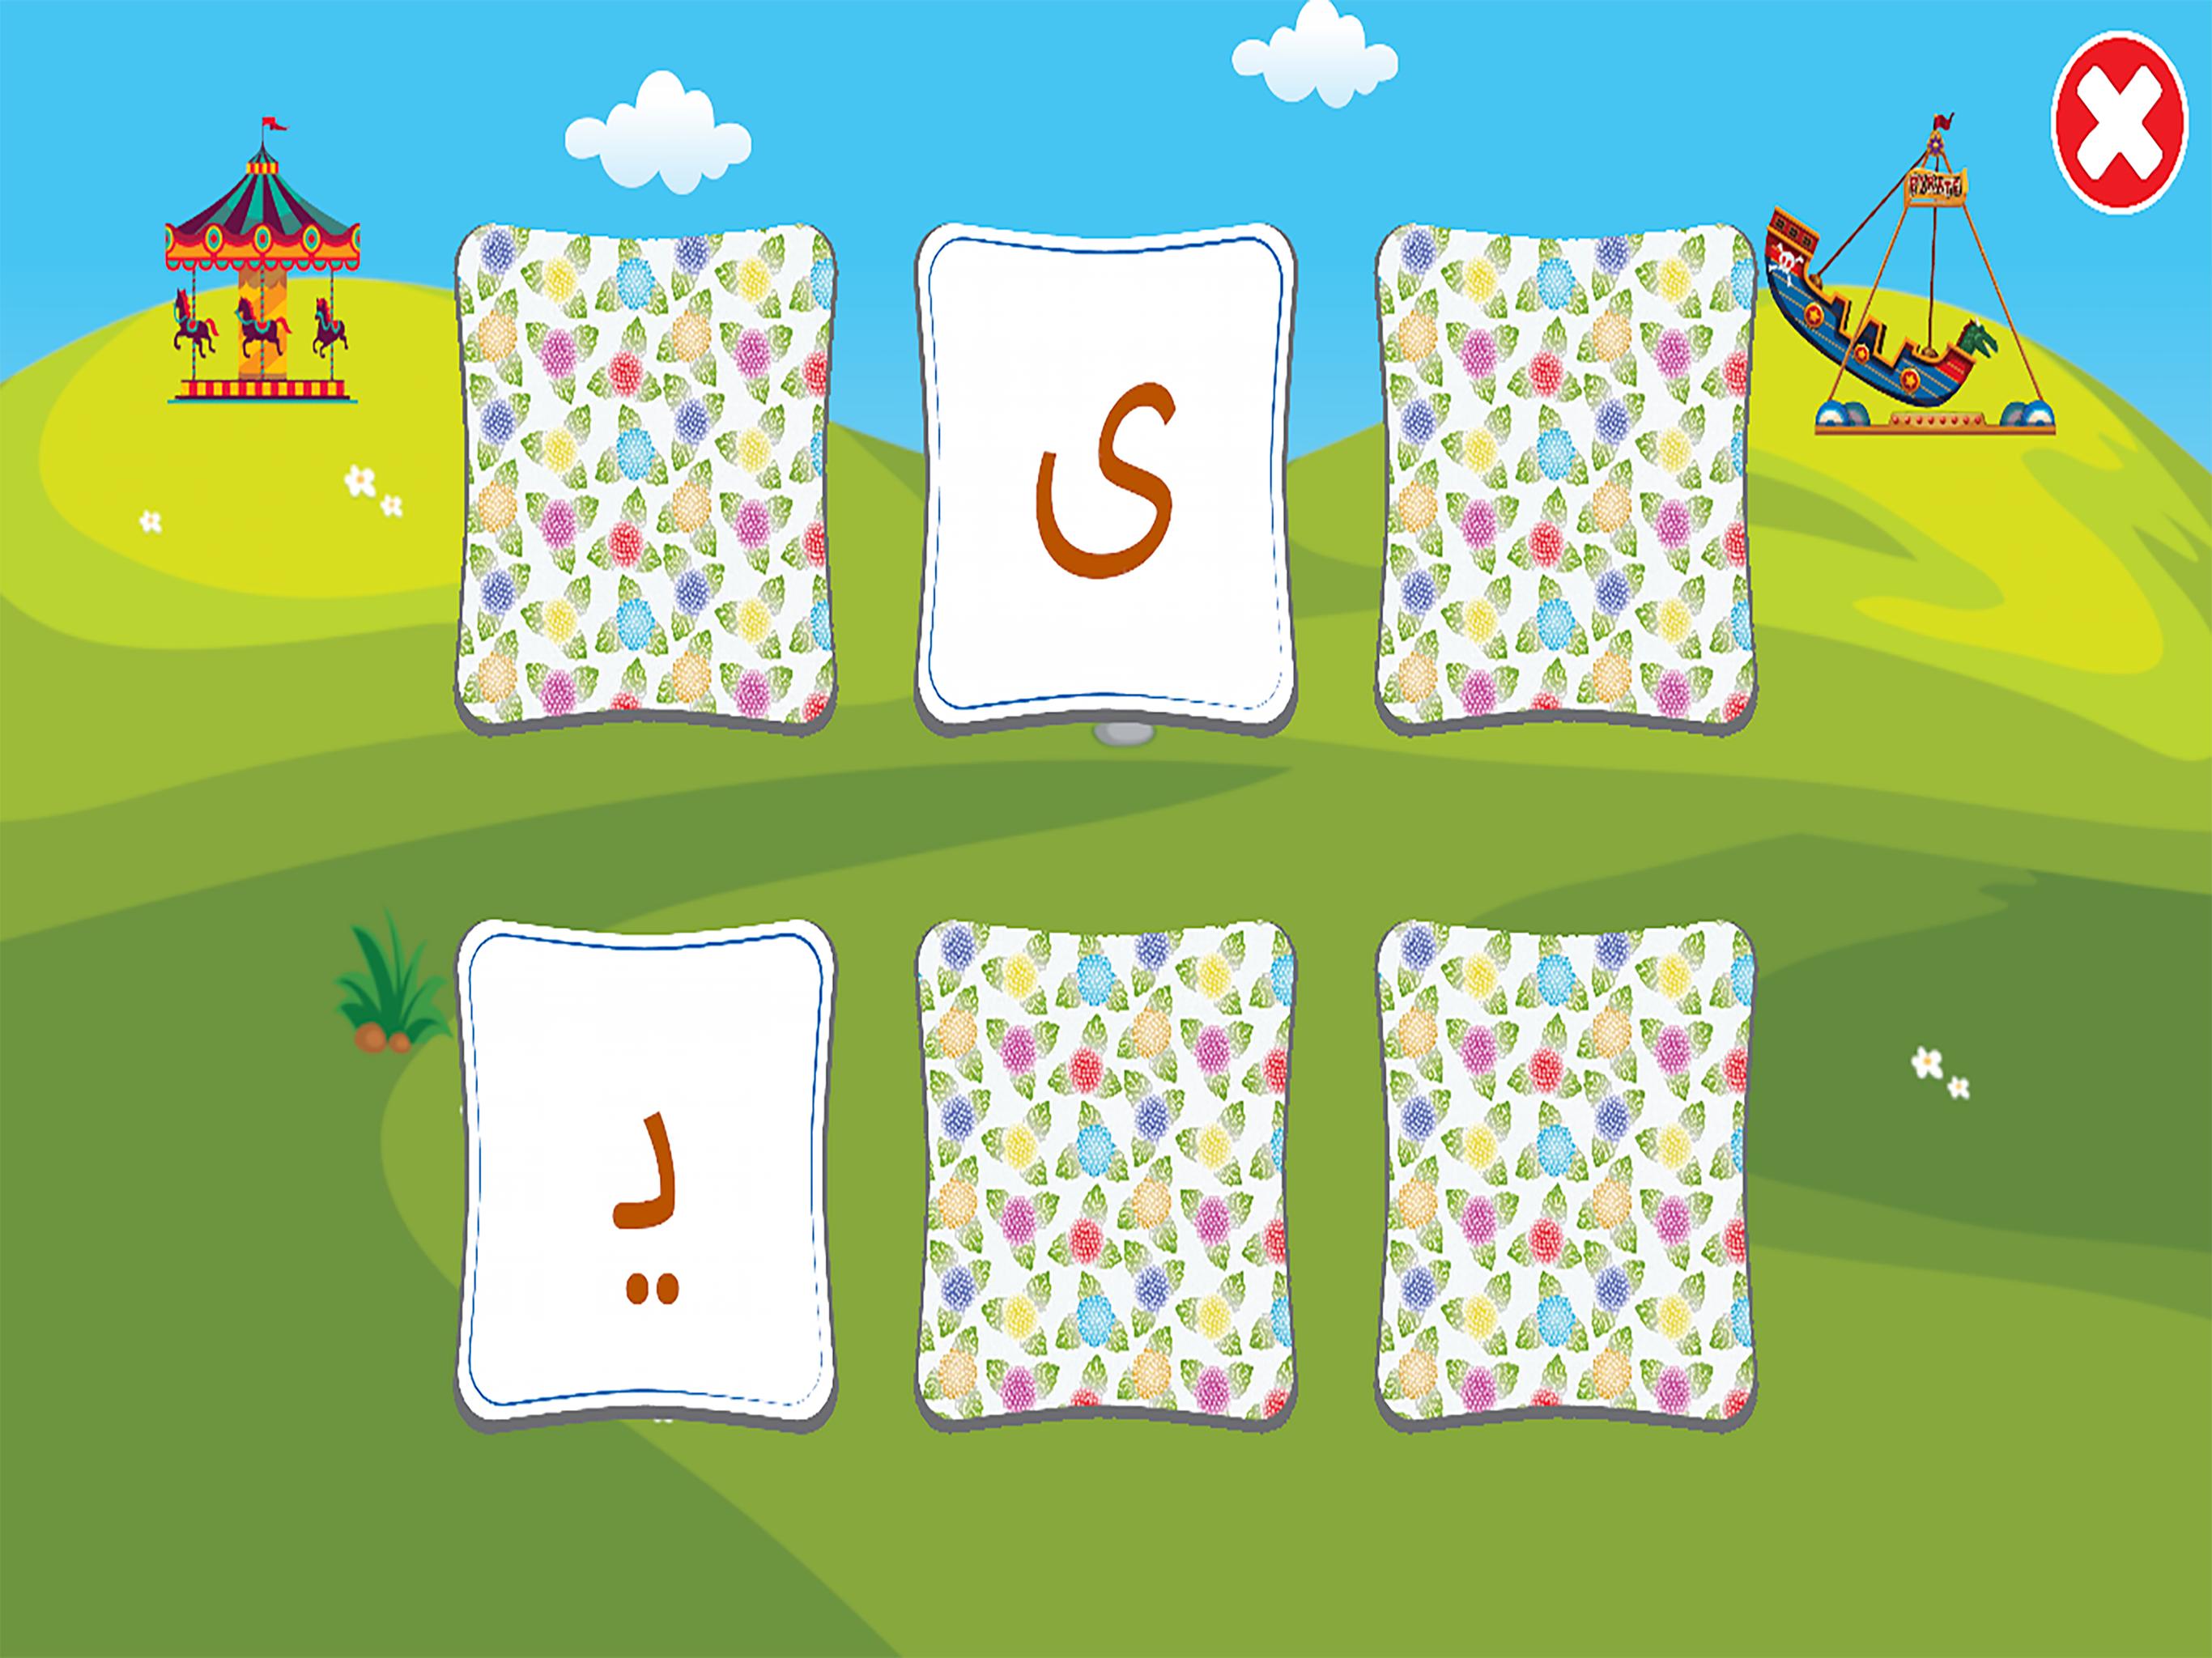 الفبای فارسی کودکان (Farsi alphabet game) 1.11.2 Screenshot 22